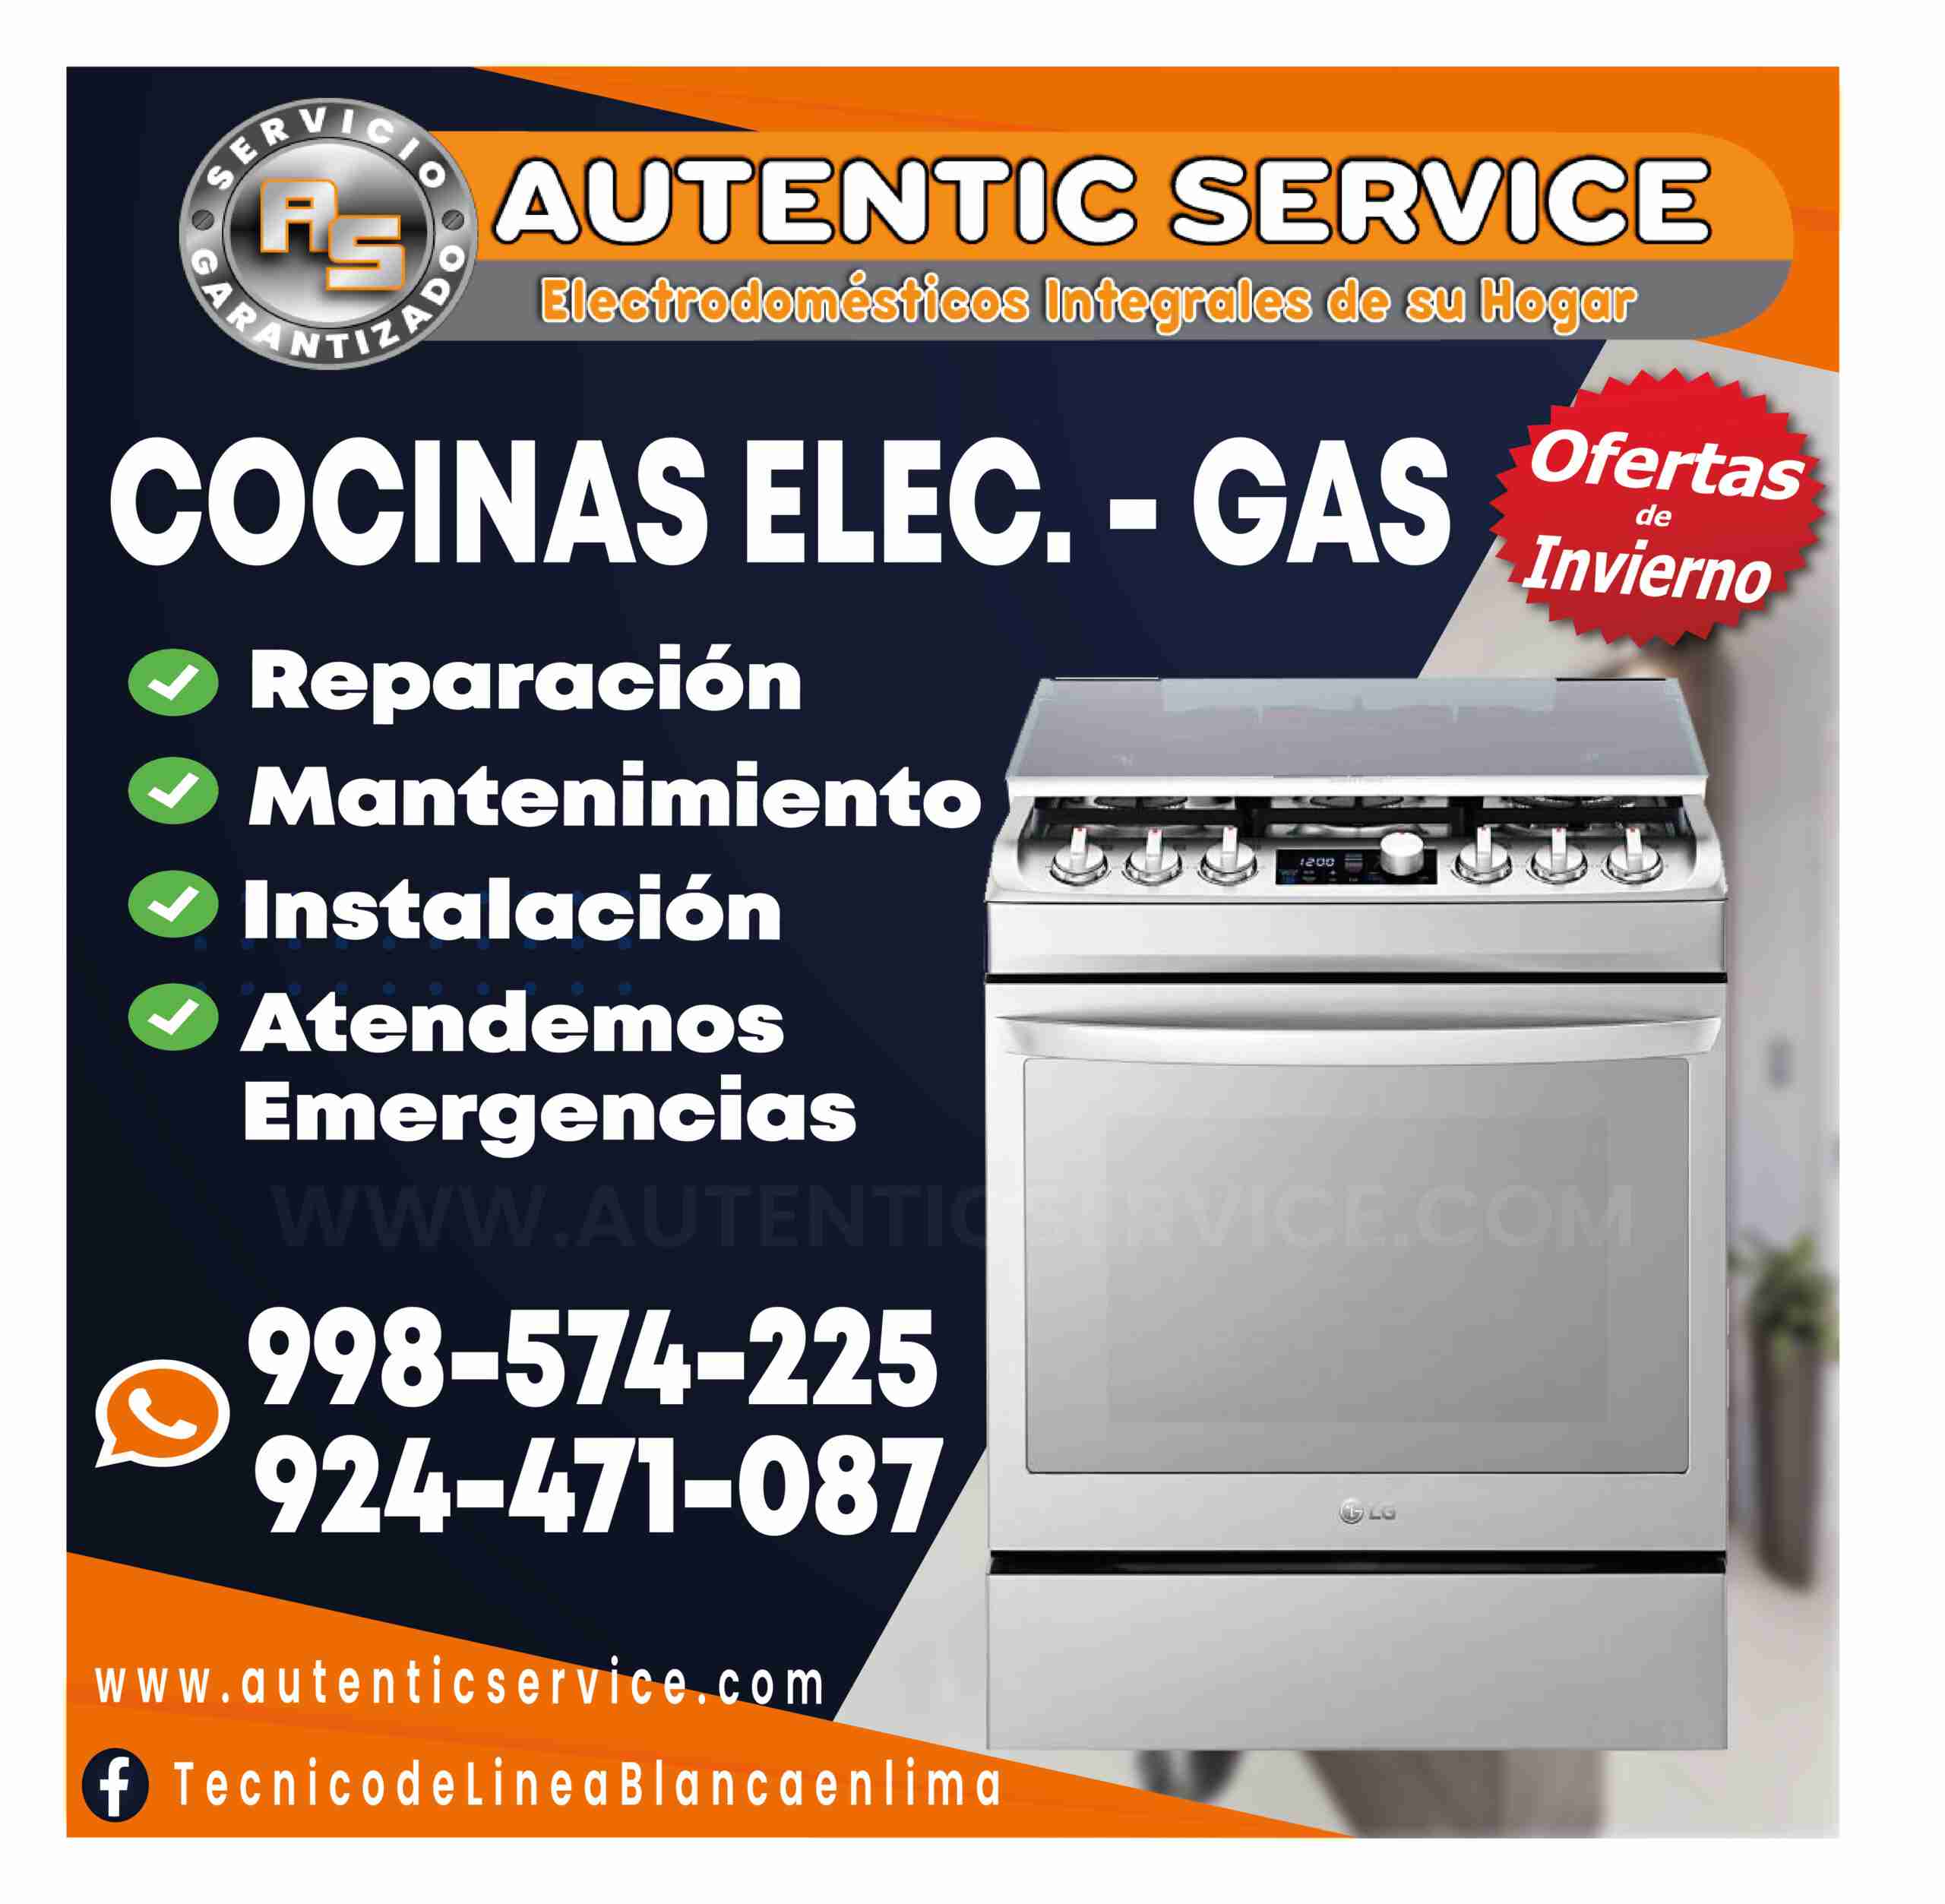 How to get to Cocinas-Reparacion E Instalacion-Servi Hogar de